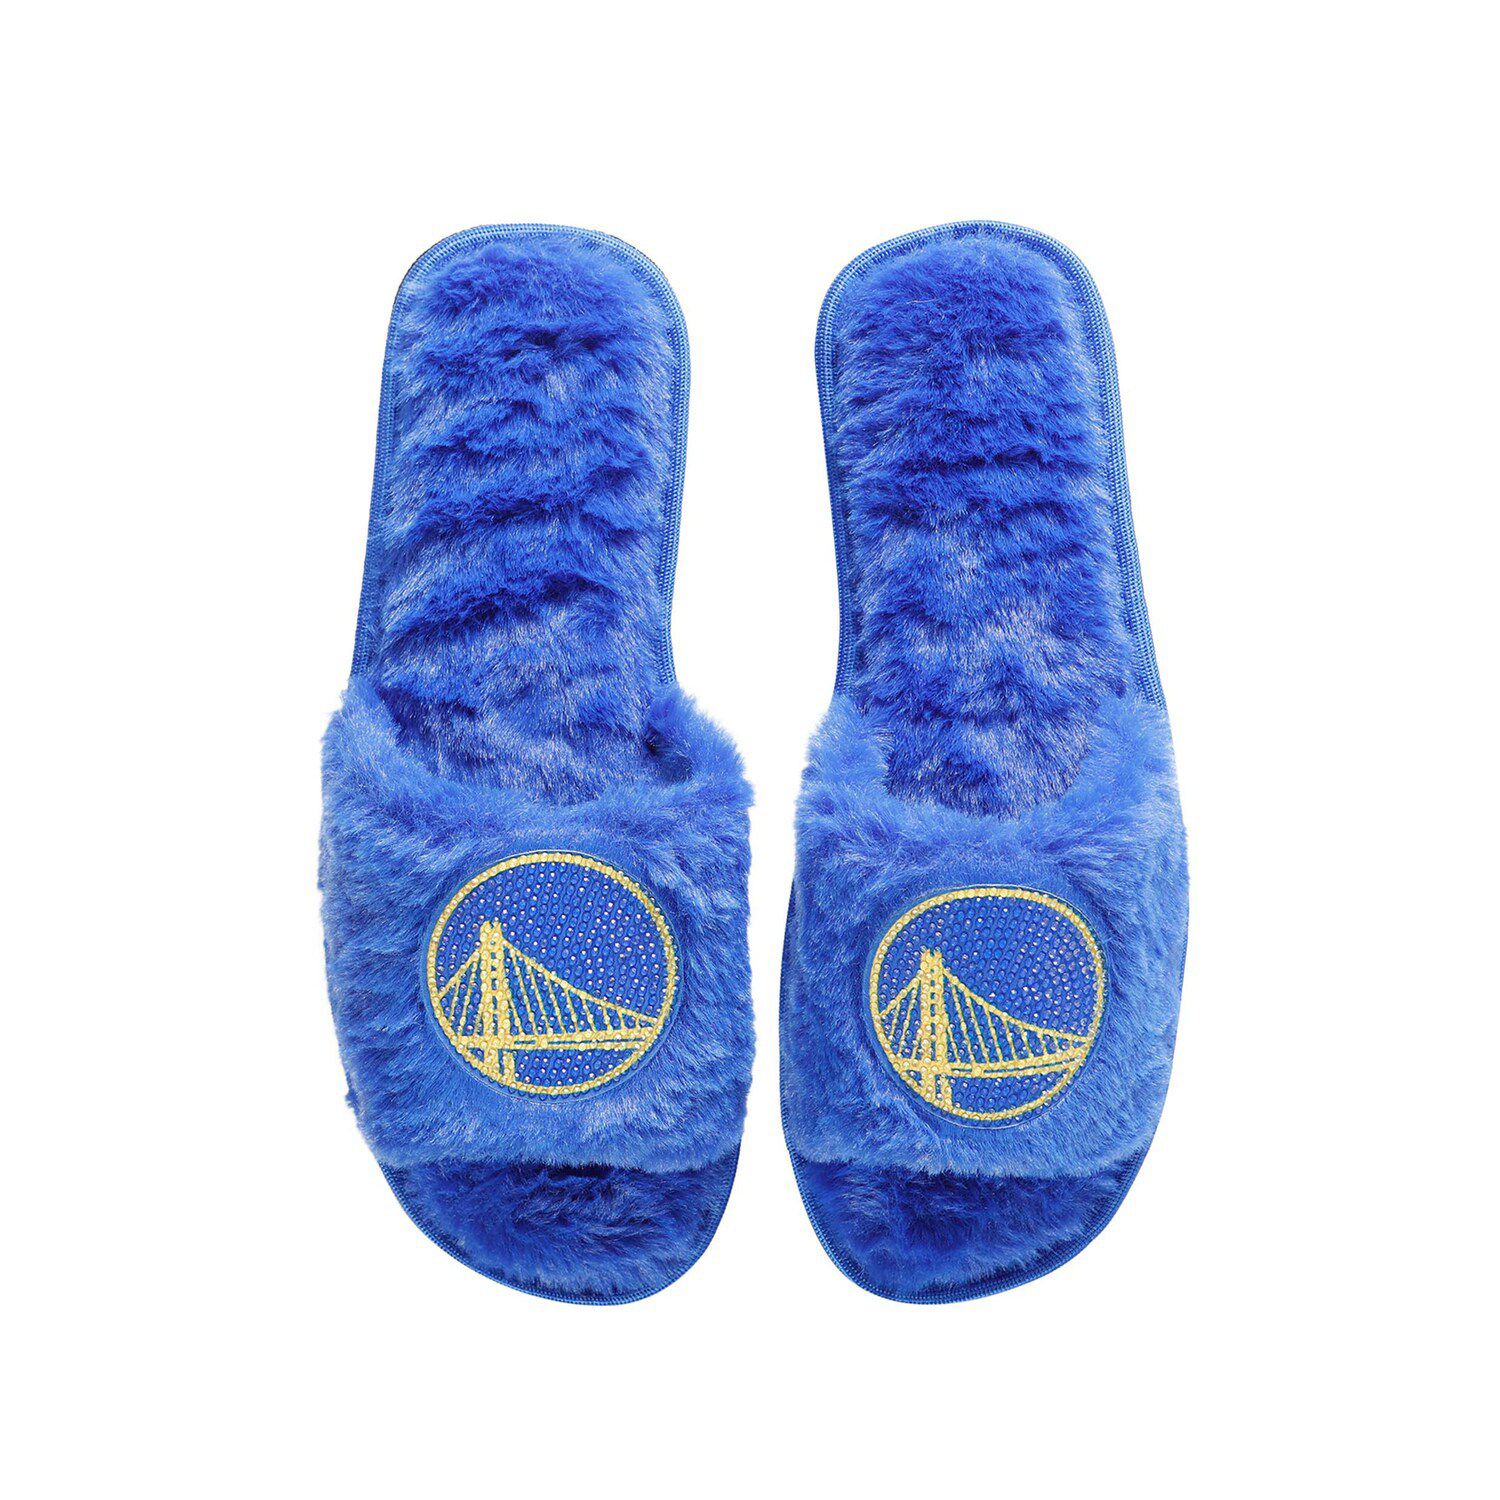 Men's Golden State Warriors FOCO Wordmark Gel Slide Sandals